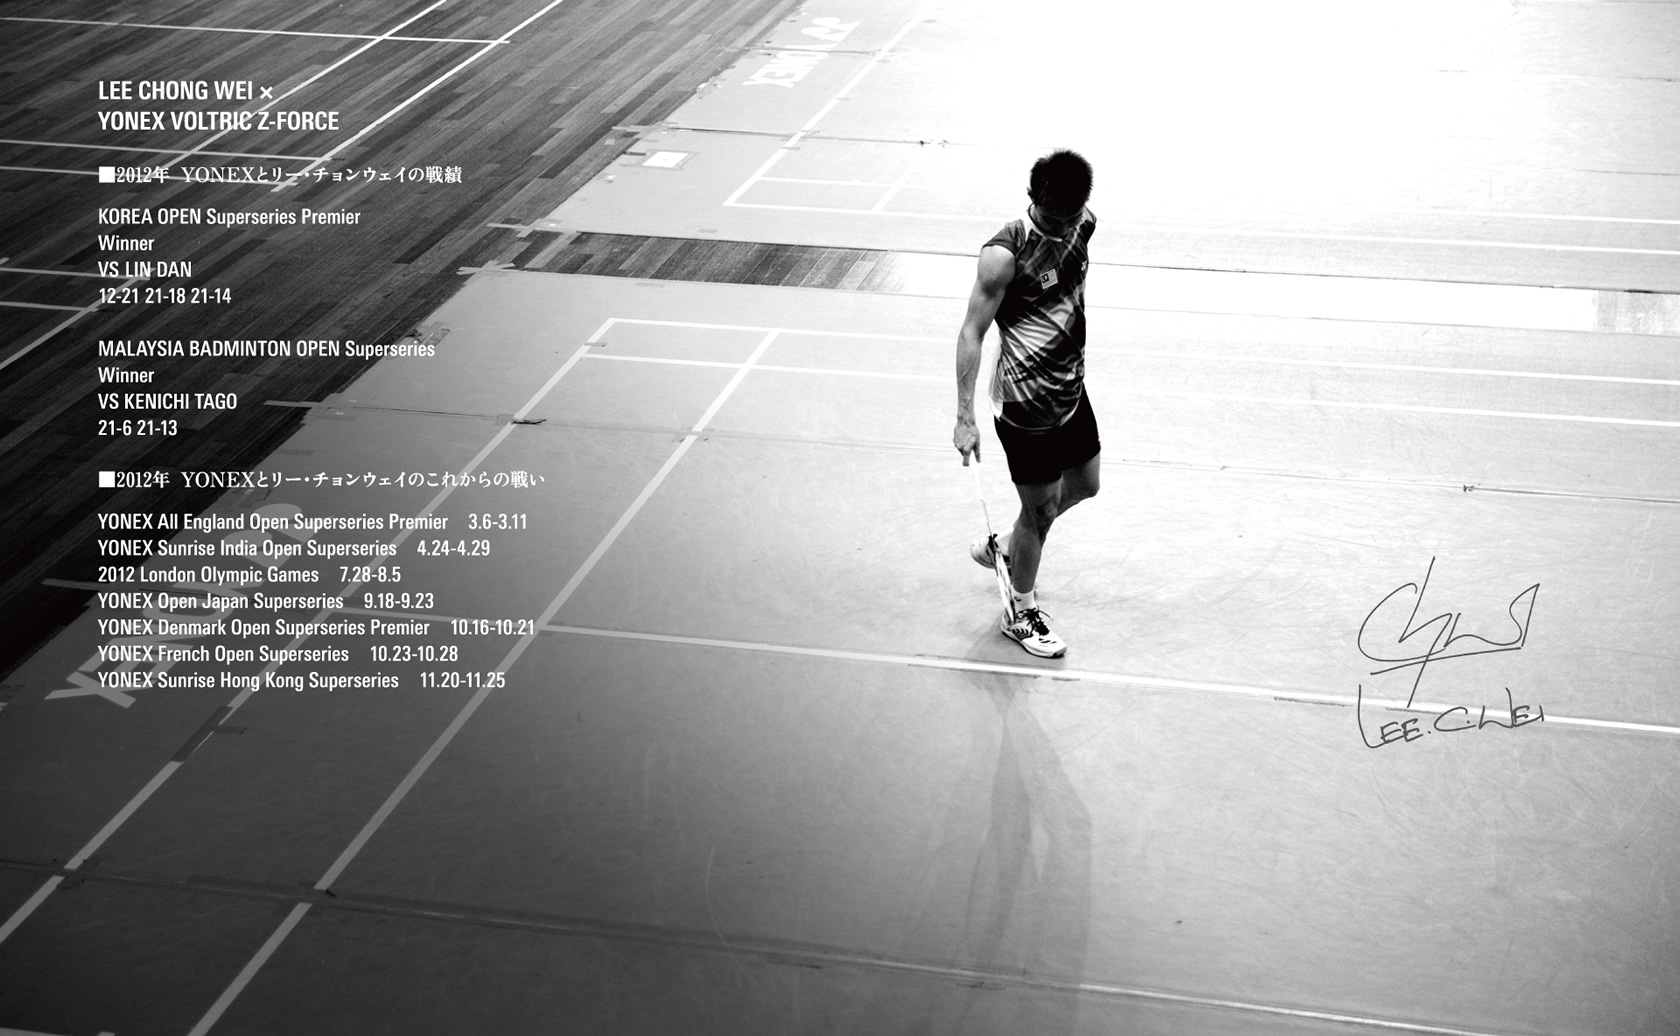 Lee Chong Wei Yonex , HD Wallpaper & Backgrounds